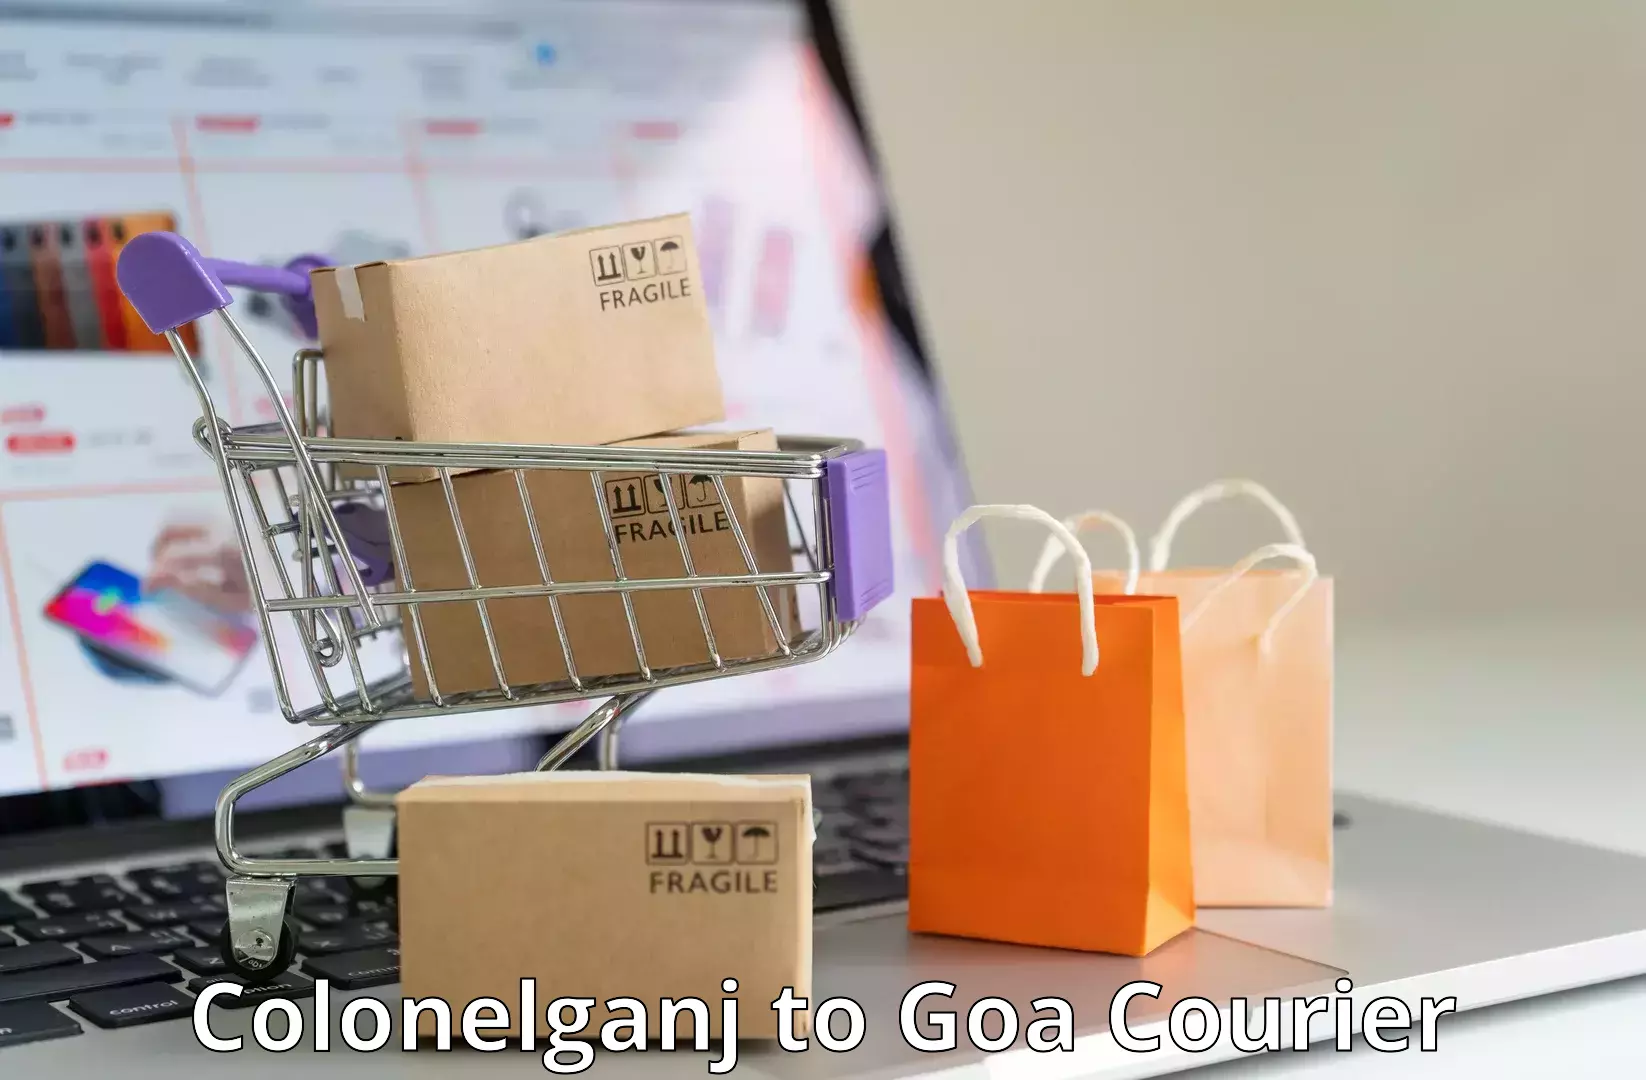 Customizable delivery plans Colonelganj to Goa University